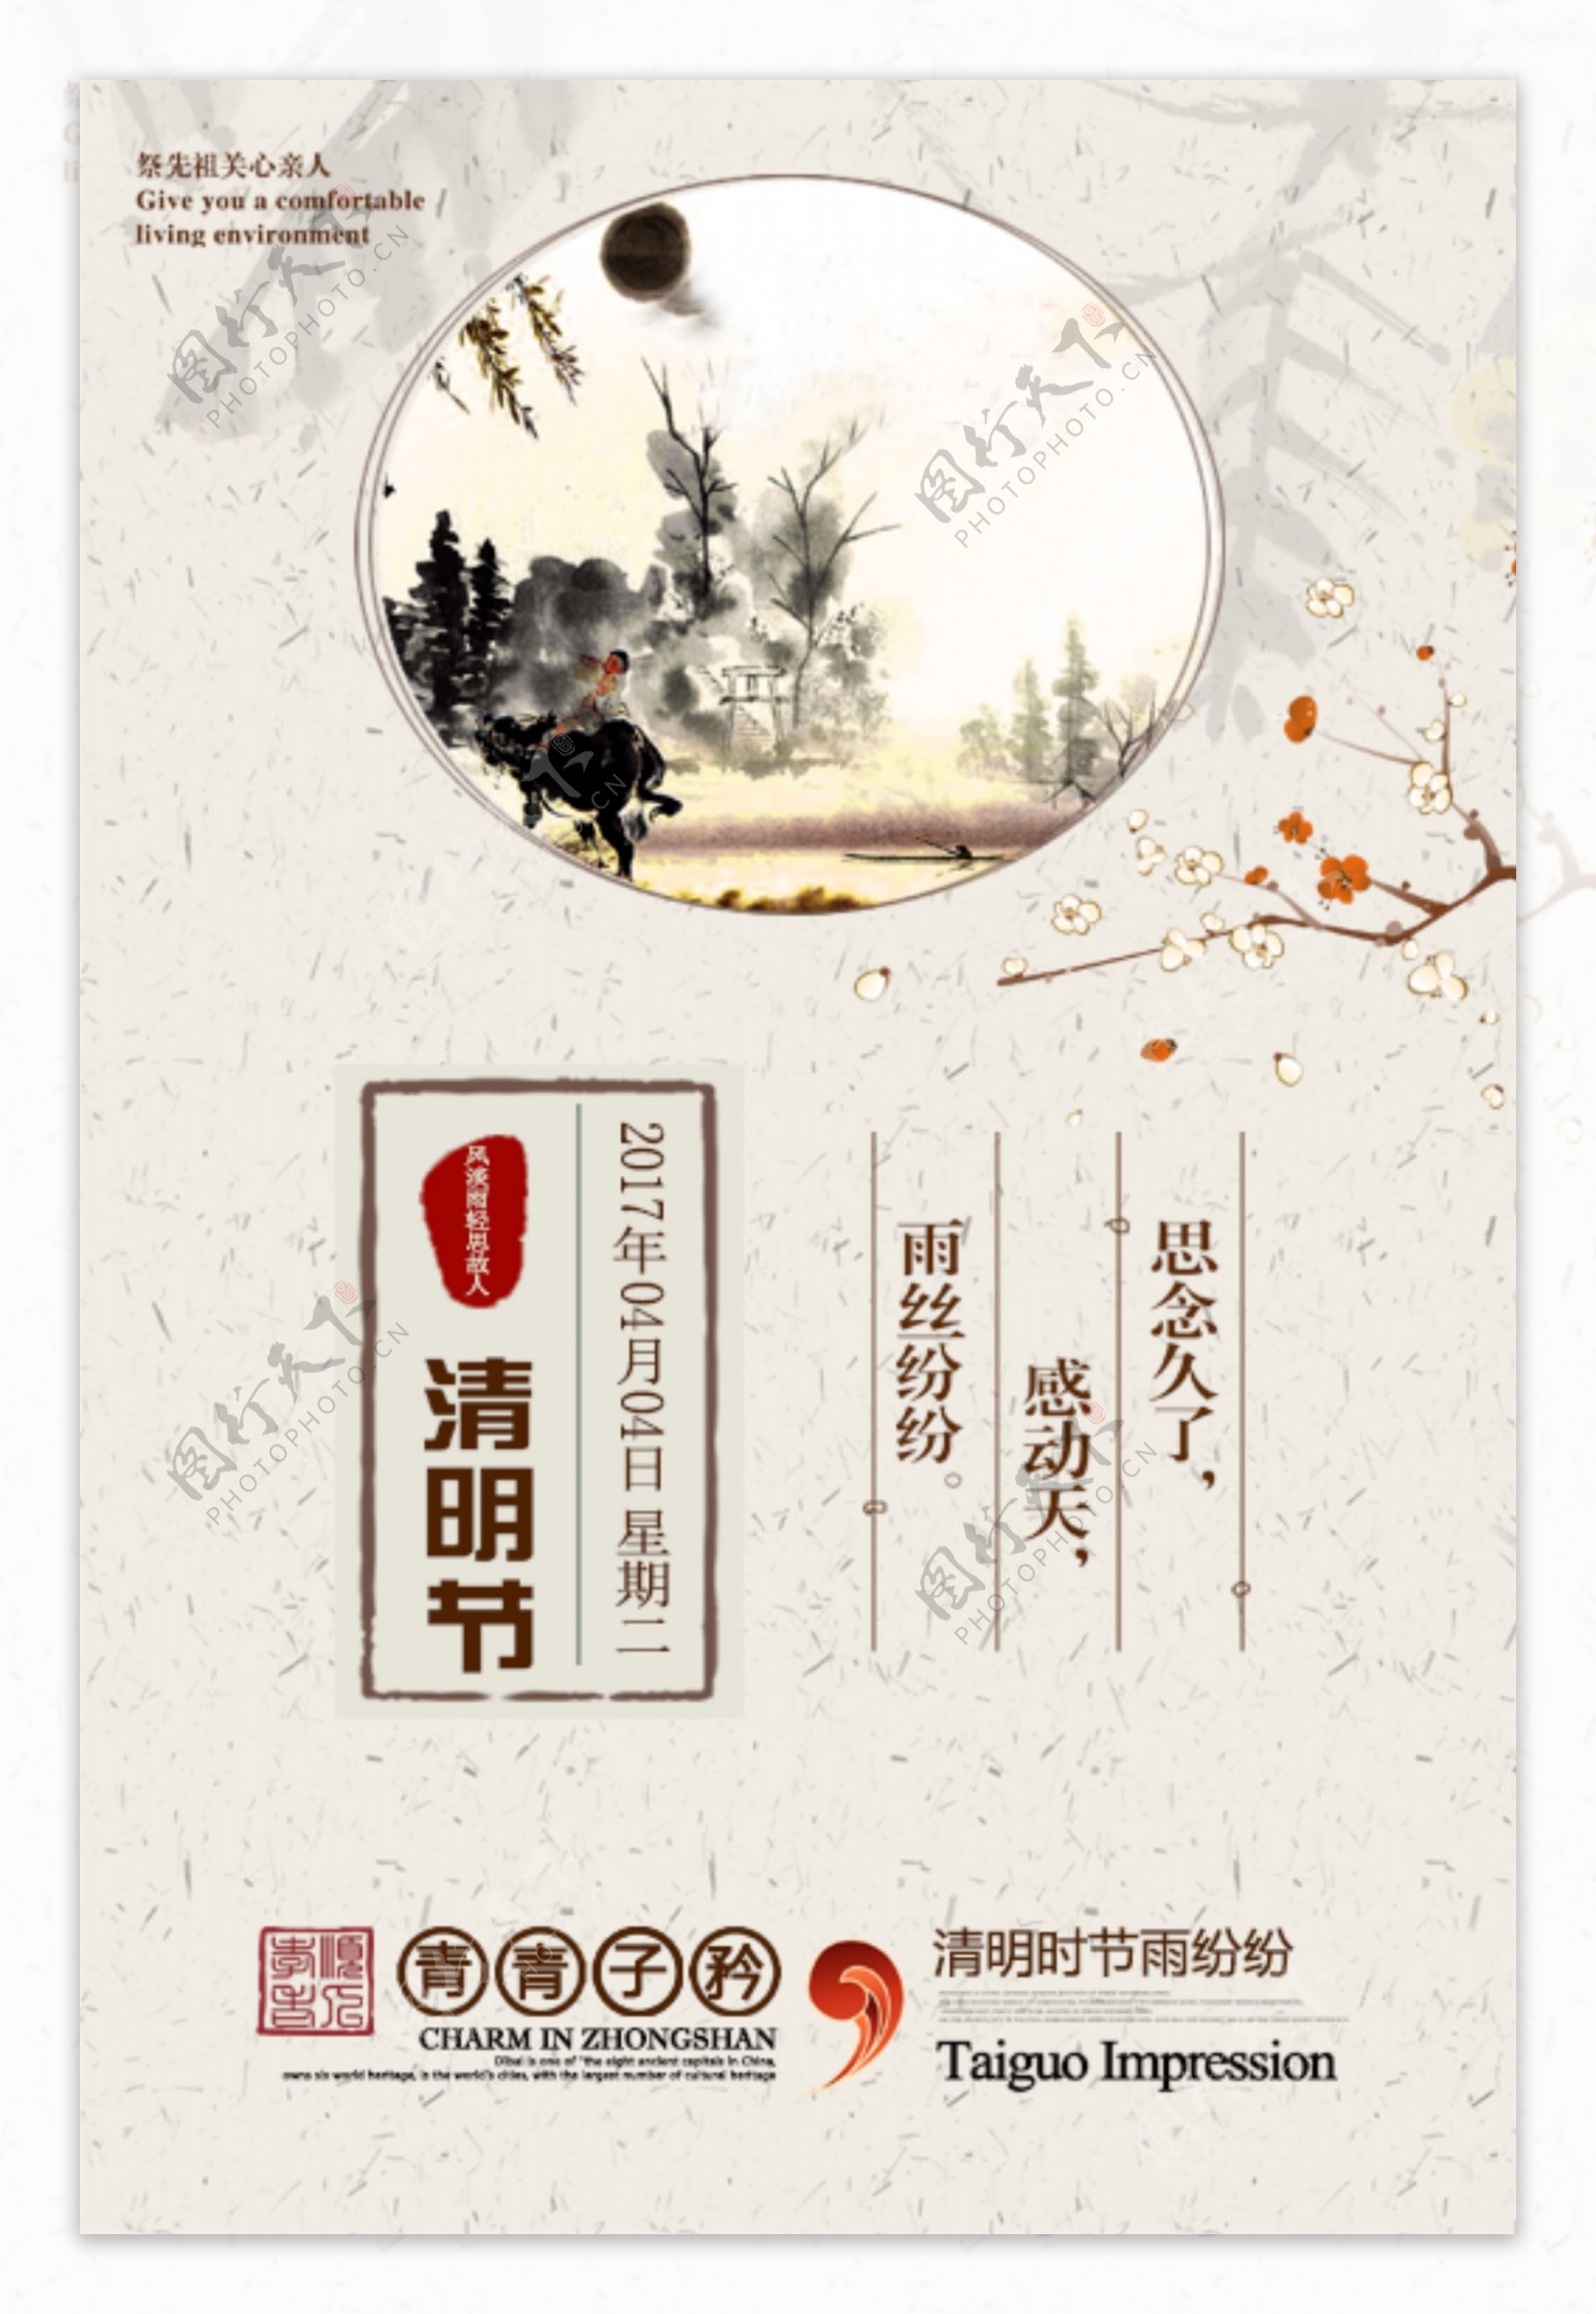 中国风清明节海报设计模板